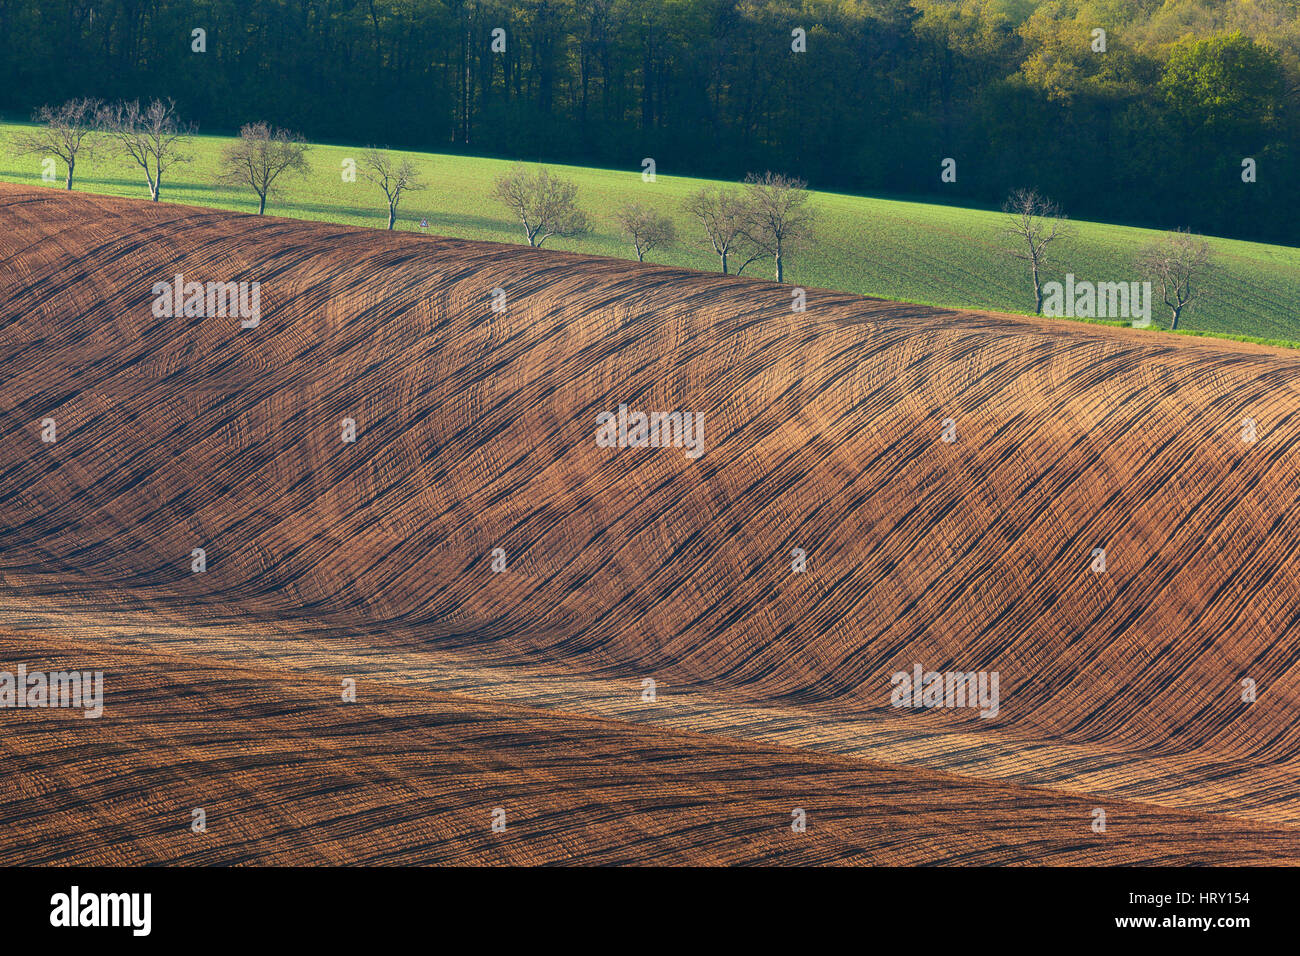 Bellissimo paesaggio minimalista con striped campi ondulati della Moravia del sud al tramonto. Natura astratta con uno sfondo marrone terra e alberi. La laminazione Foto Stock